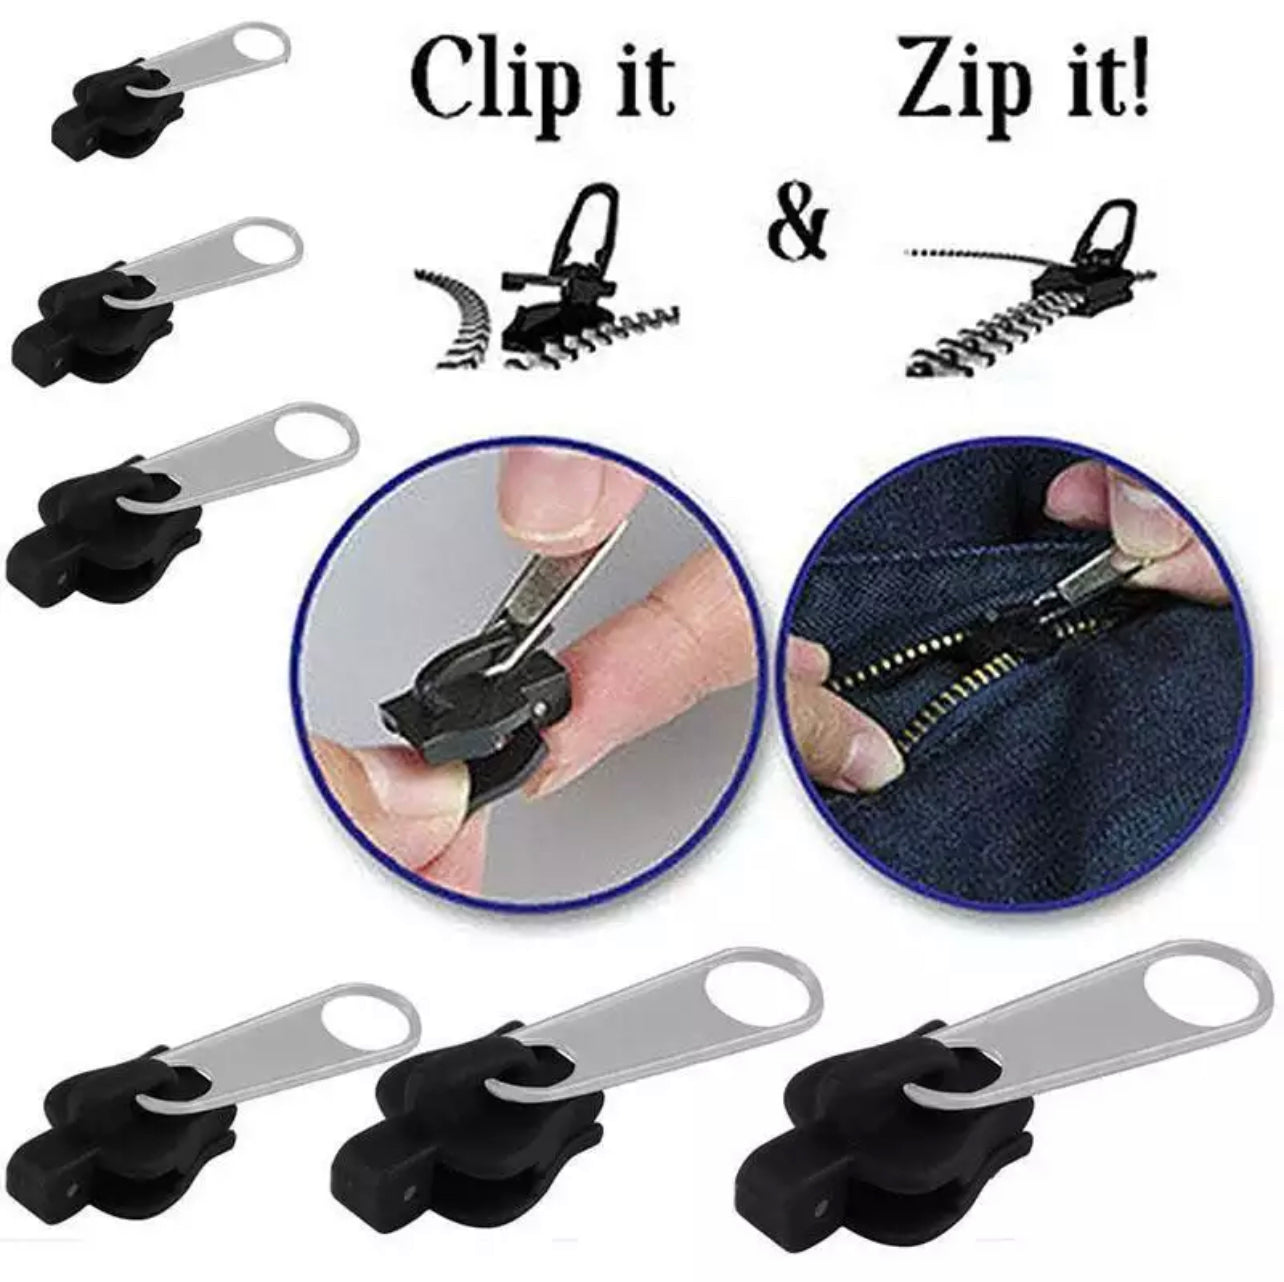 2pc Metal Instant Universal Replacement Zipper Slider Repair